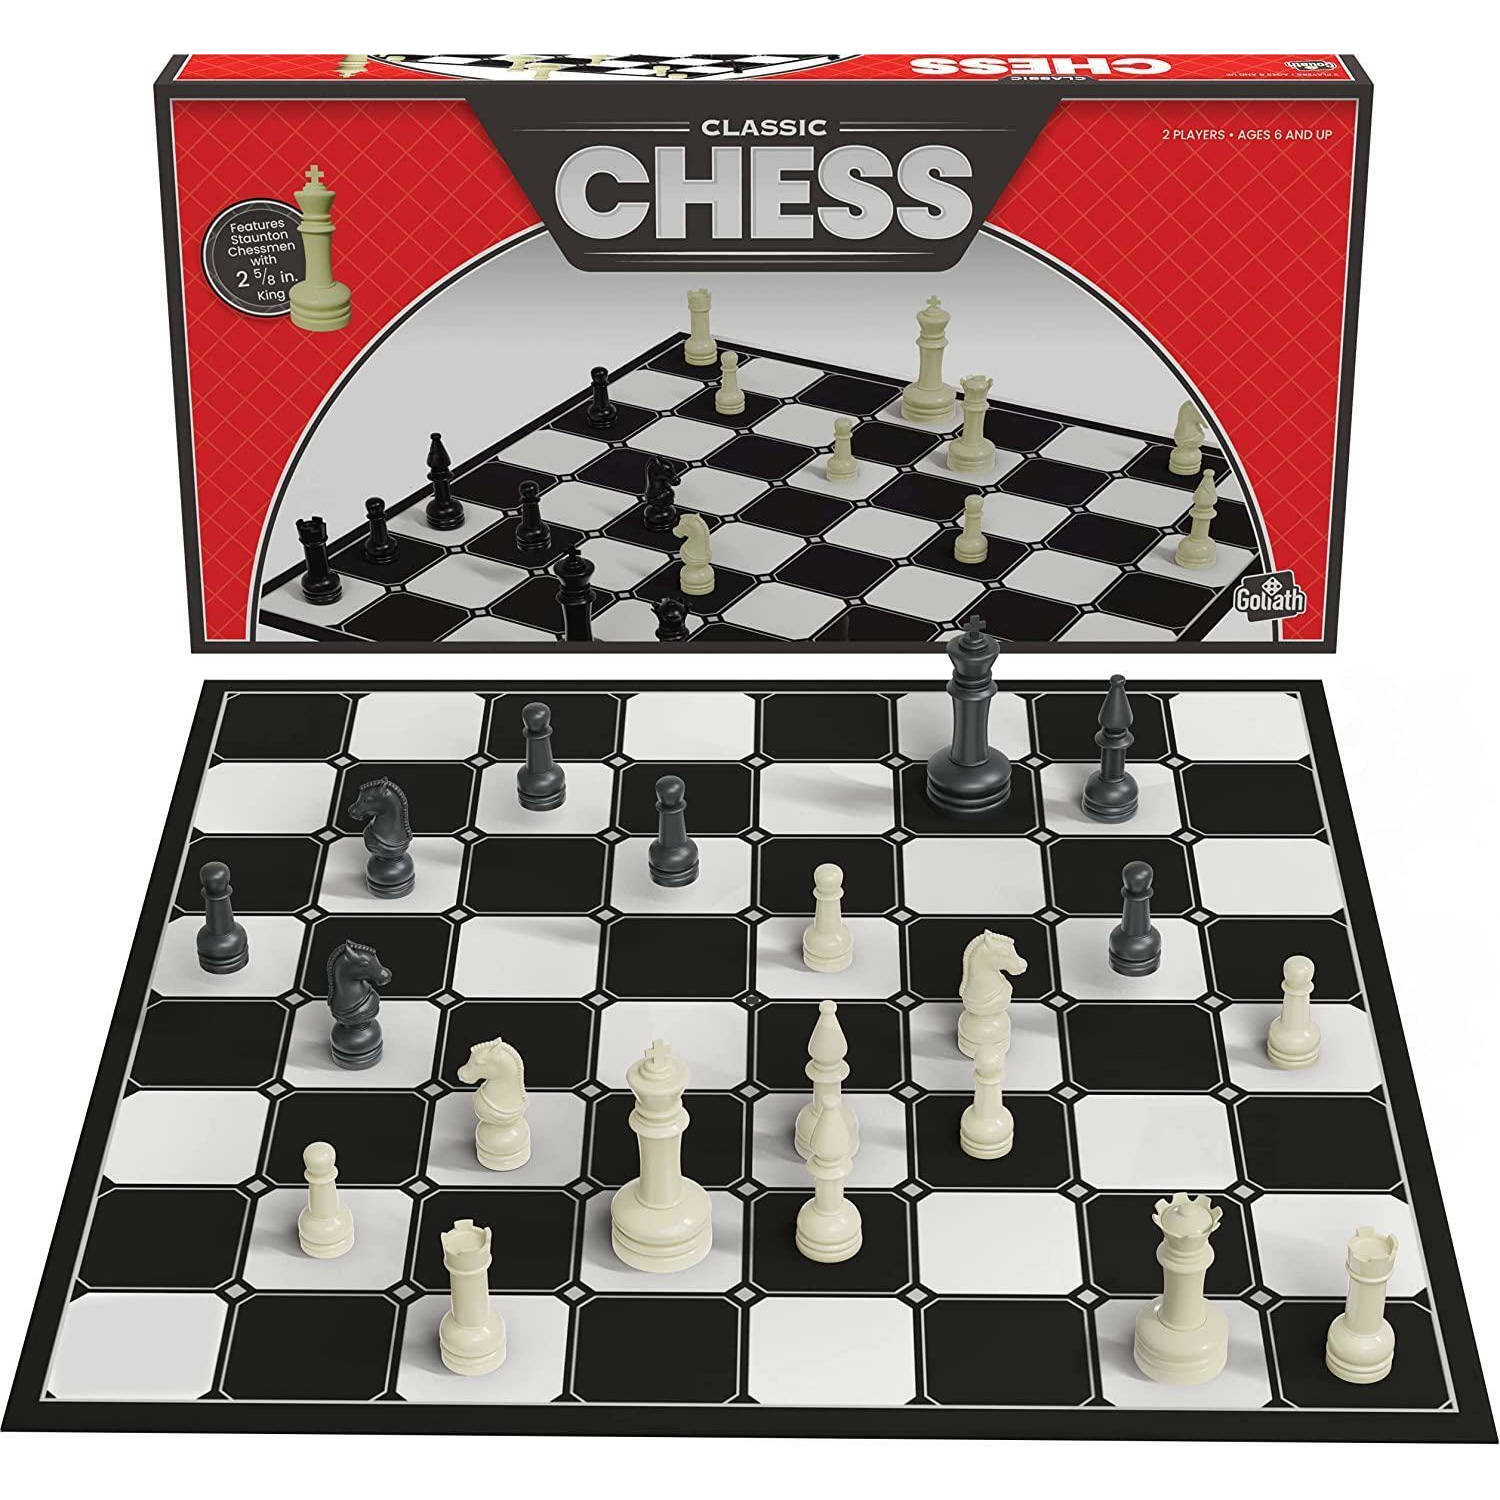 Classic Chess - Schaakspel met opvouwbaar bord en schaakstukken op ware grootte